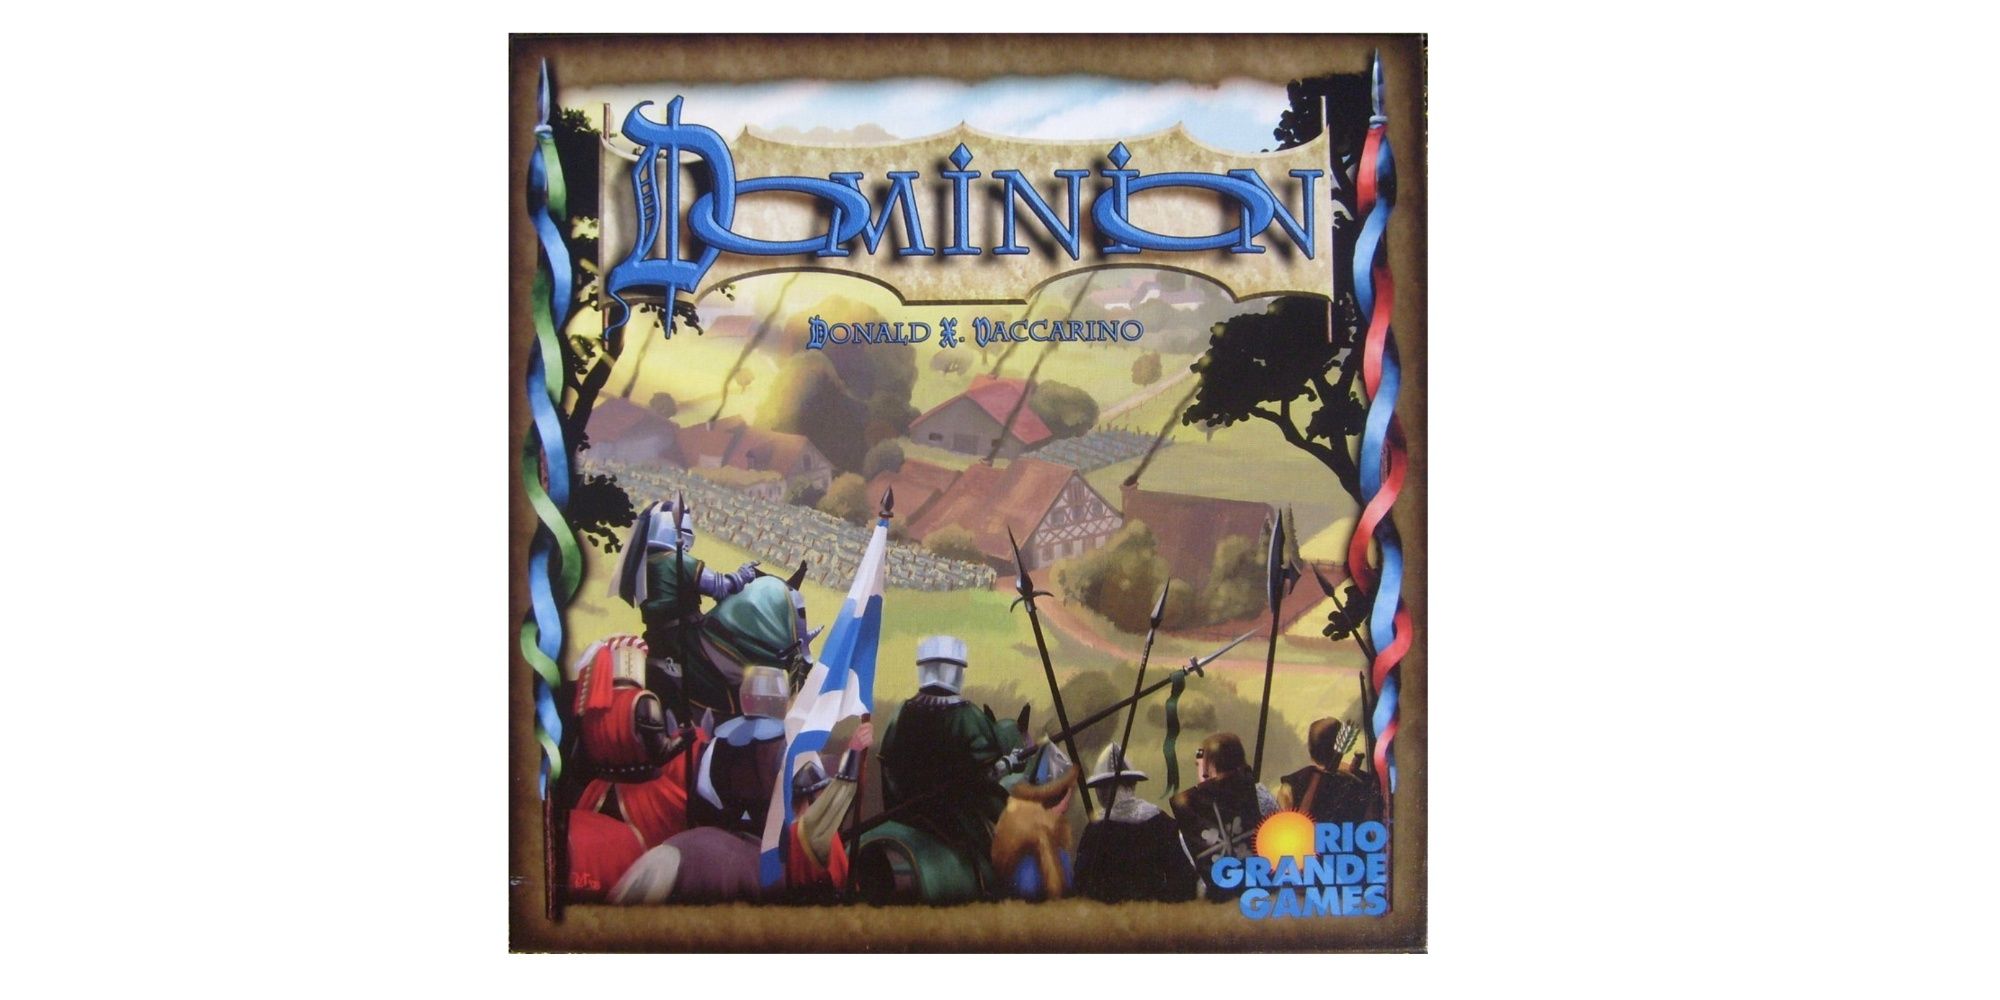 Dominion cover art